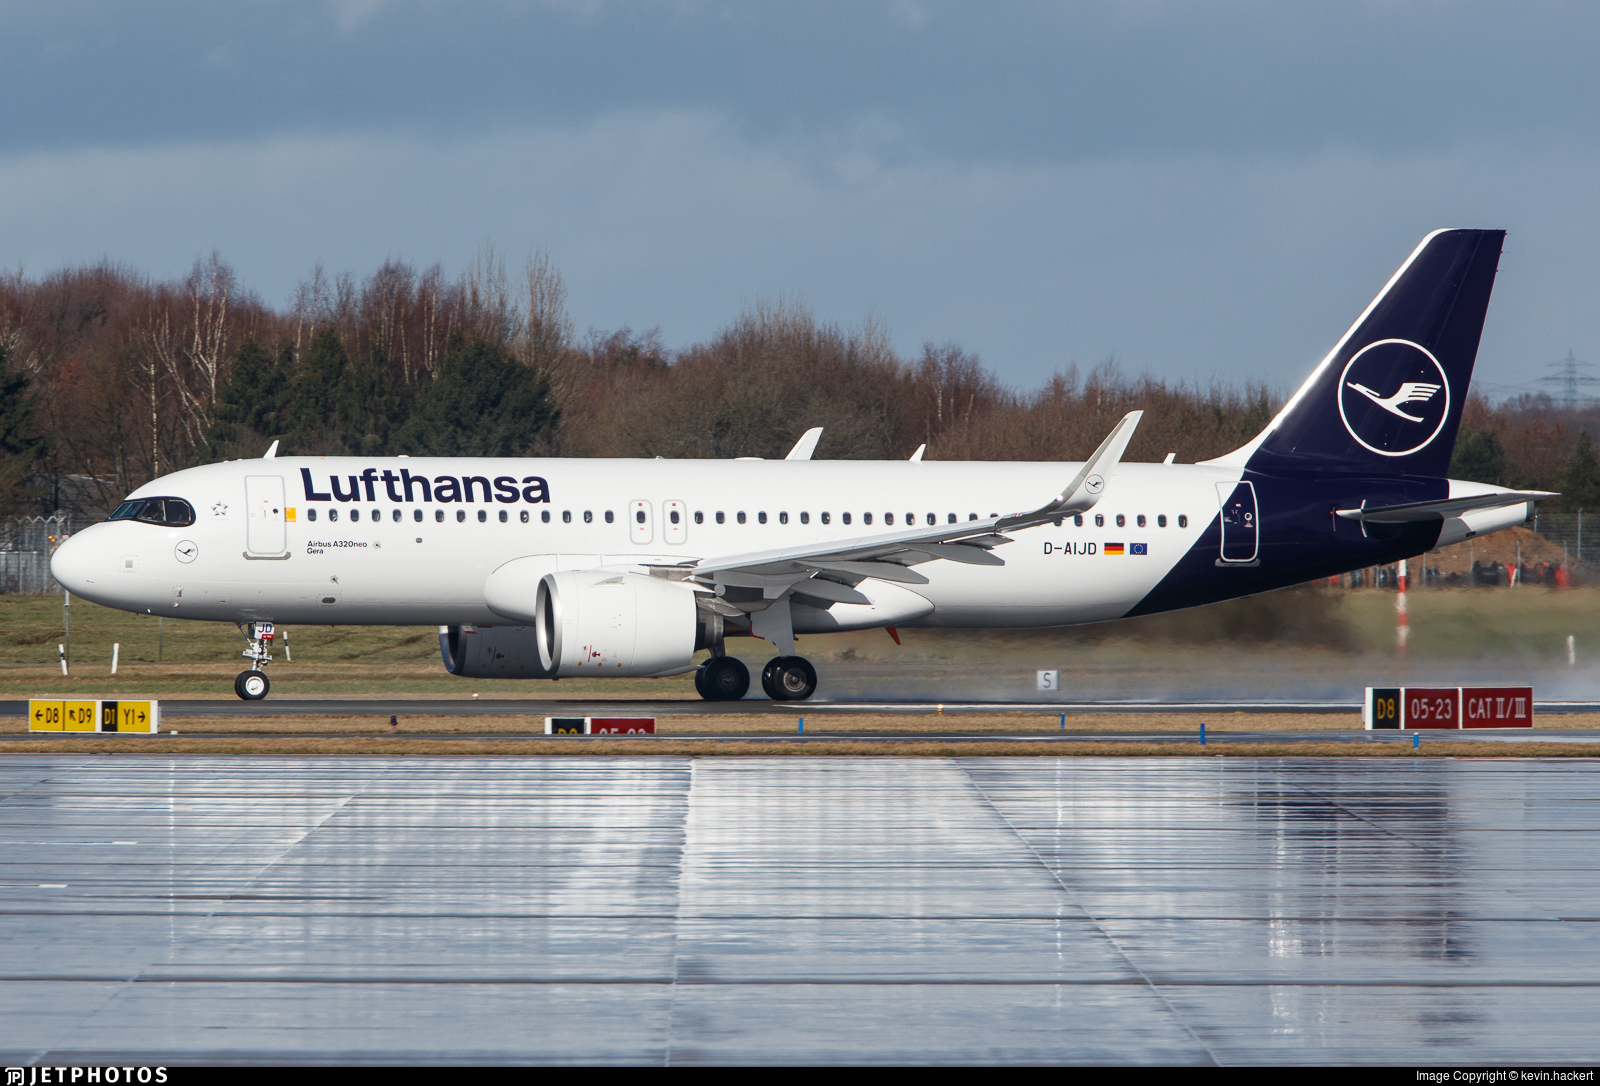 Ιταλία: Η κυβέρνηση ξεκινά επίσημες διαπραγματεύσεις με την Lufthansa